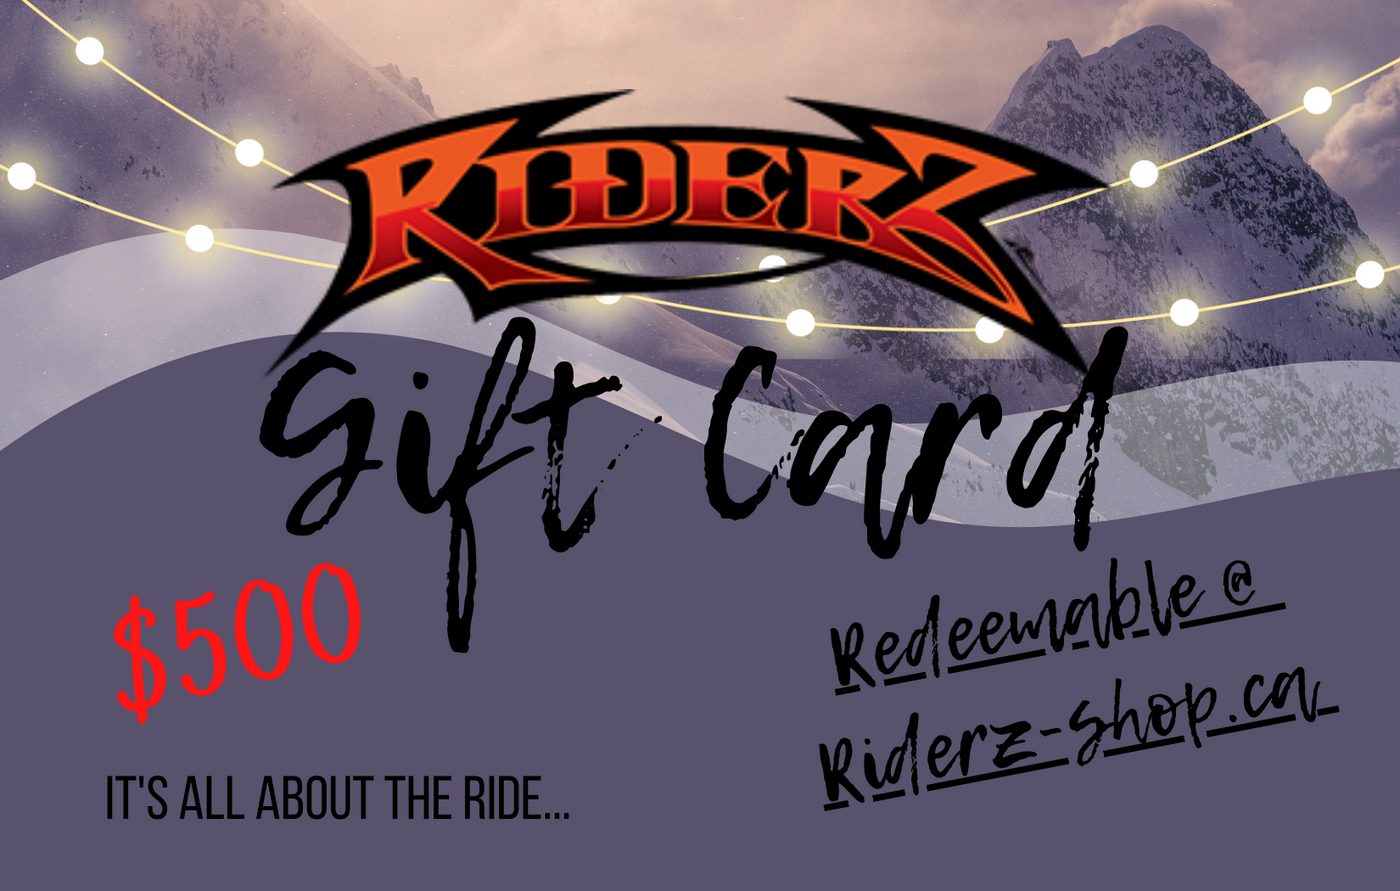 RIDERZ-SHOP GIFT CARD